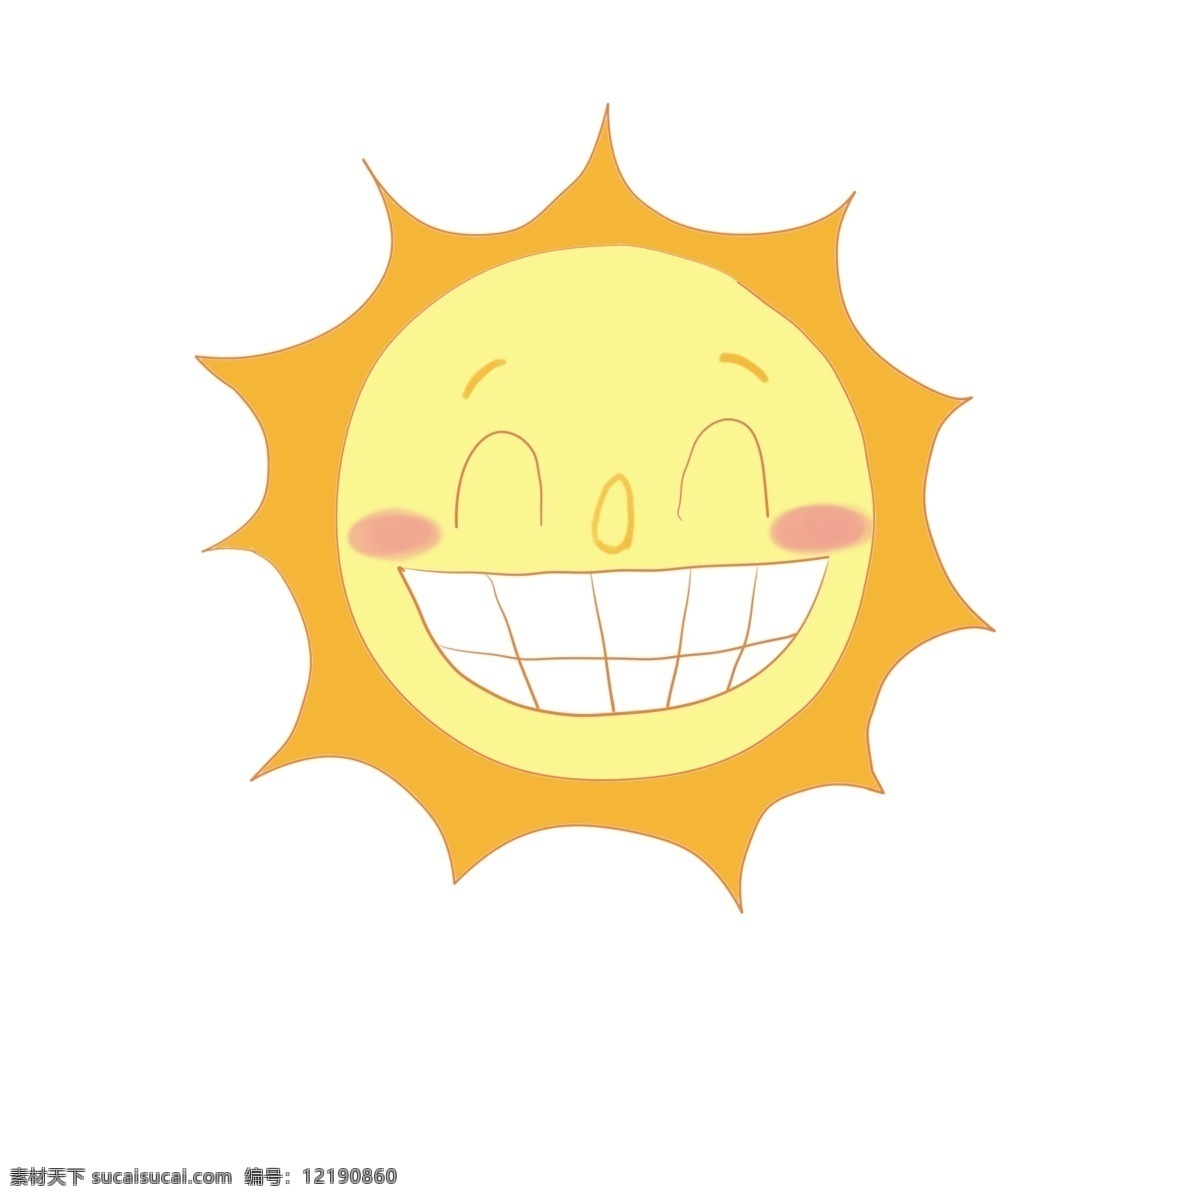 开心 太阳 笑脸 插画 圆圆的太阳 卡通插画 笑脸插画 微笑插画 高兴插画 愉快插画 金色的太阳